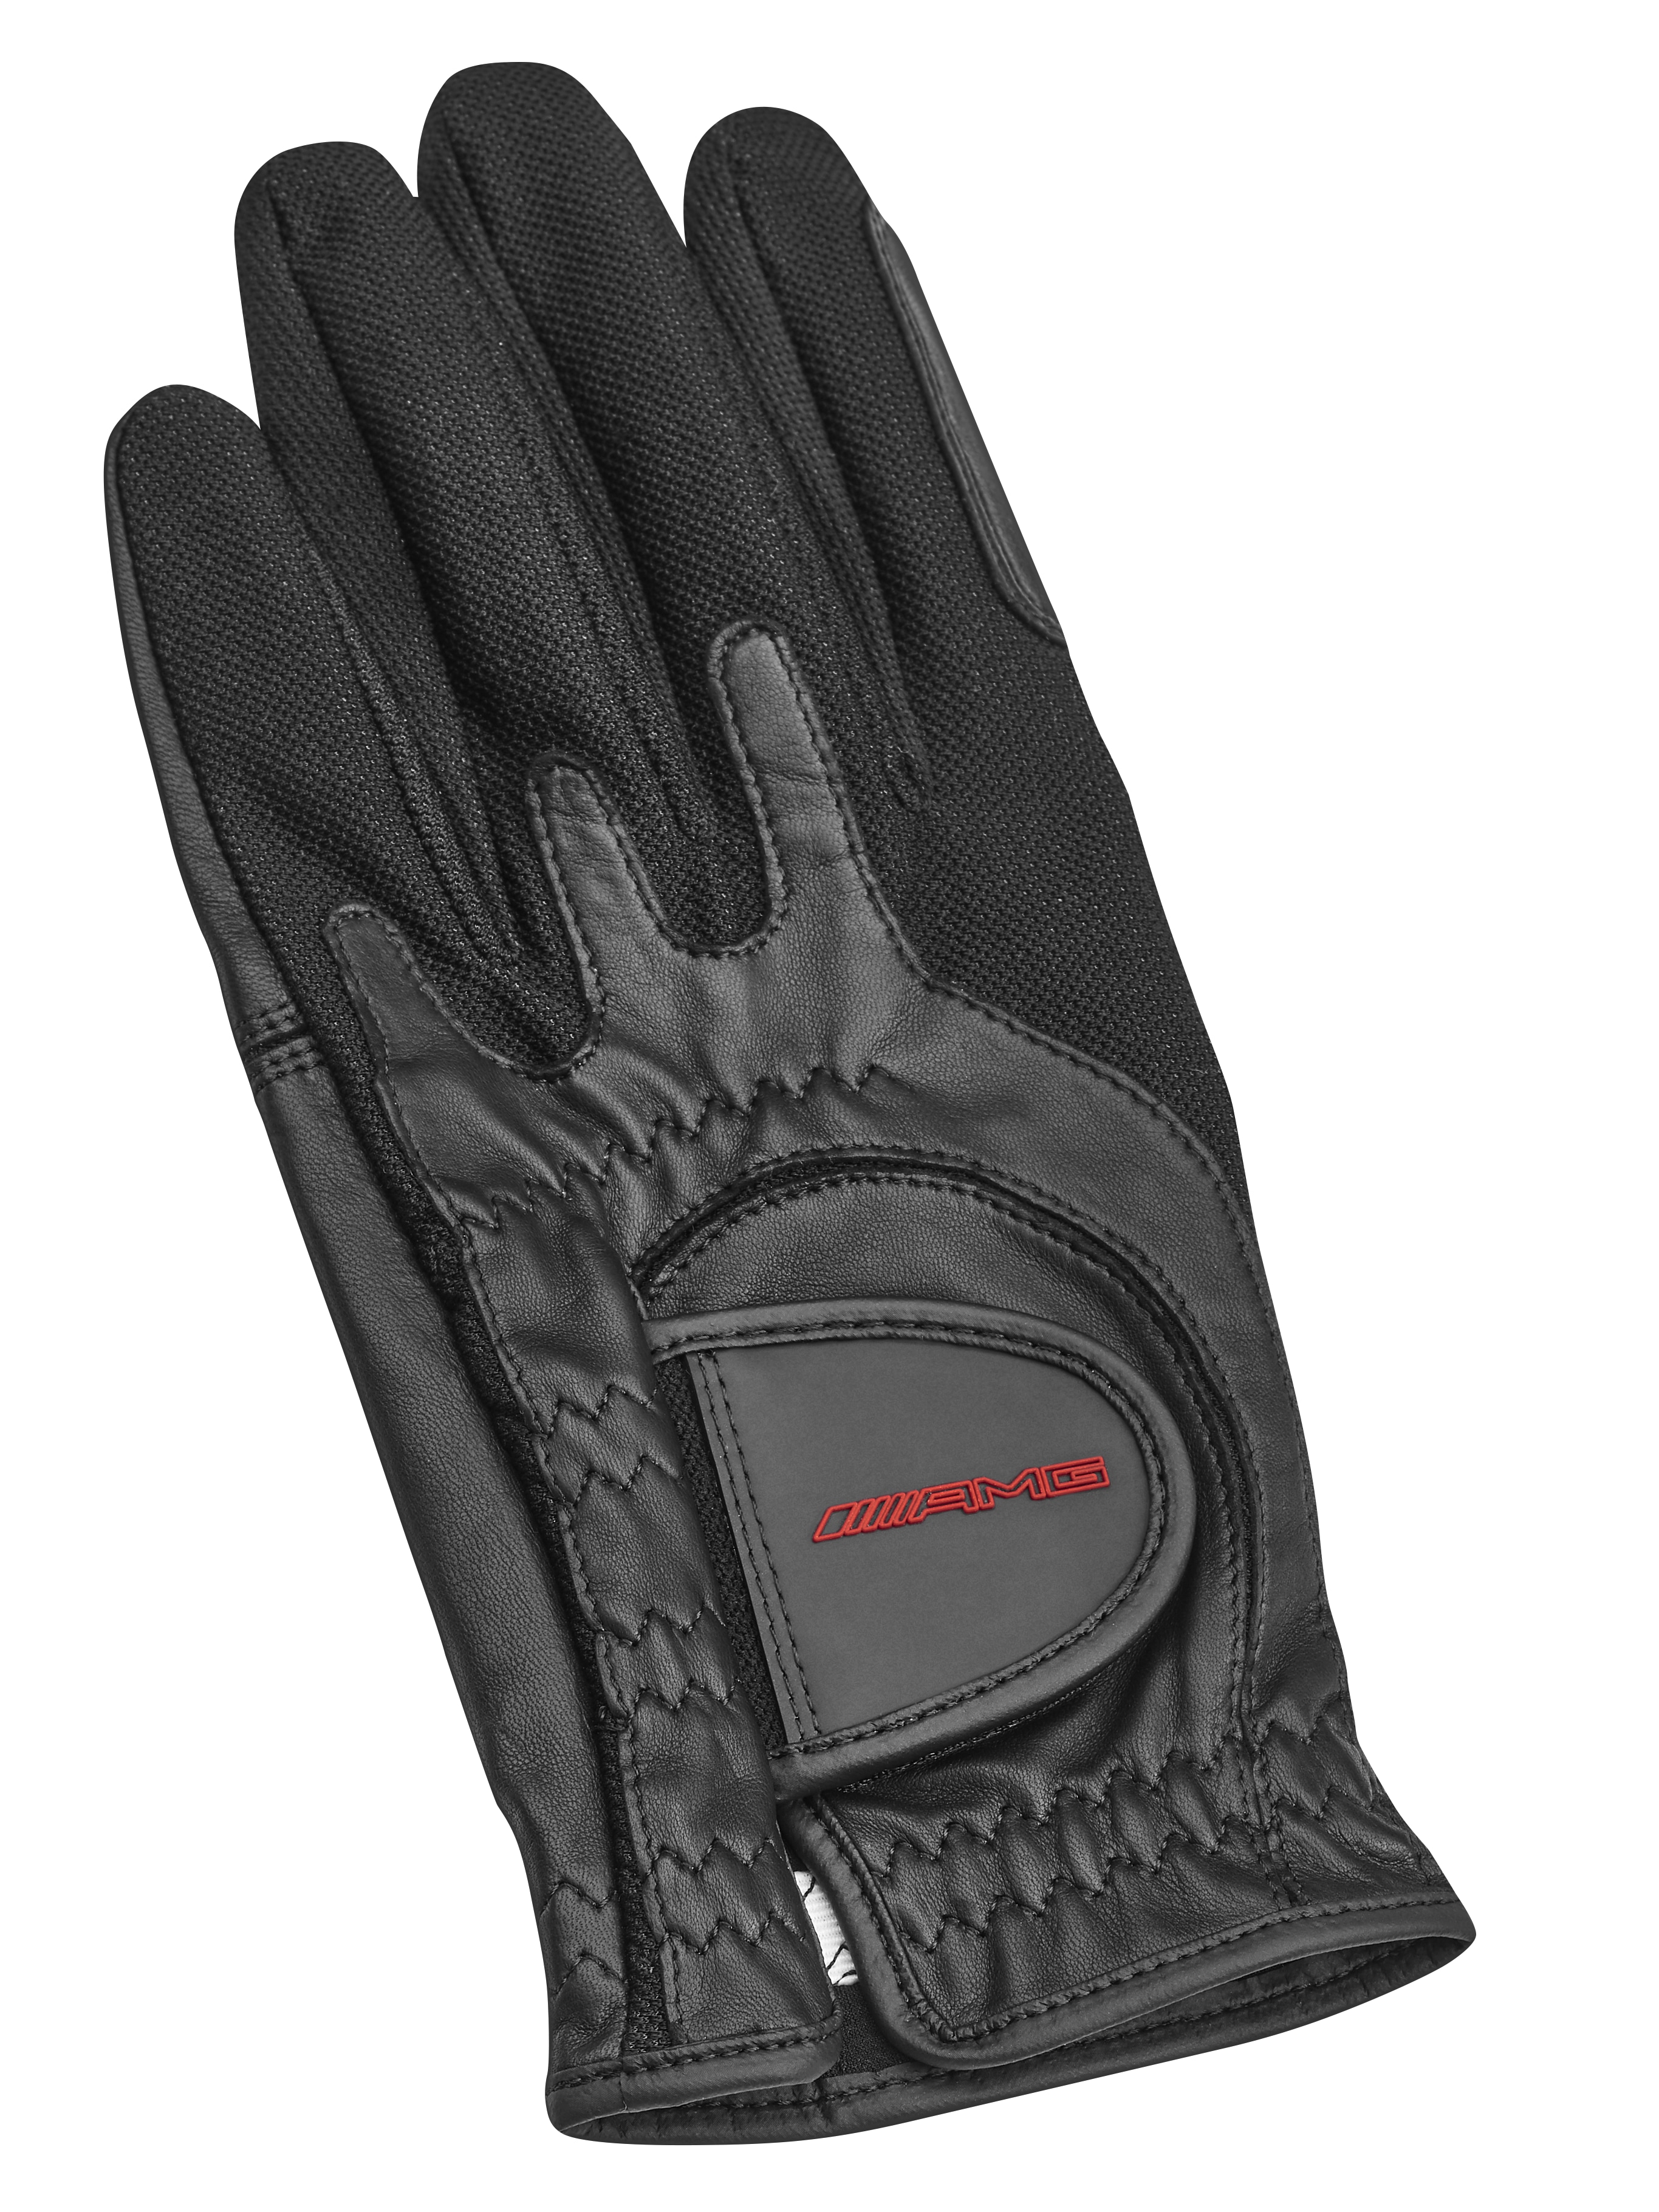 AMG Golf-Handschuh - schwarz, one size